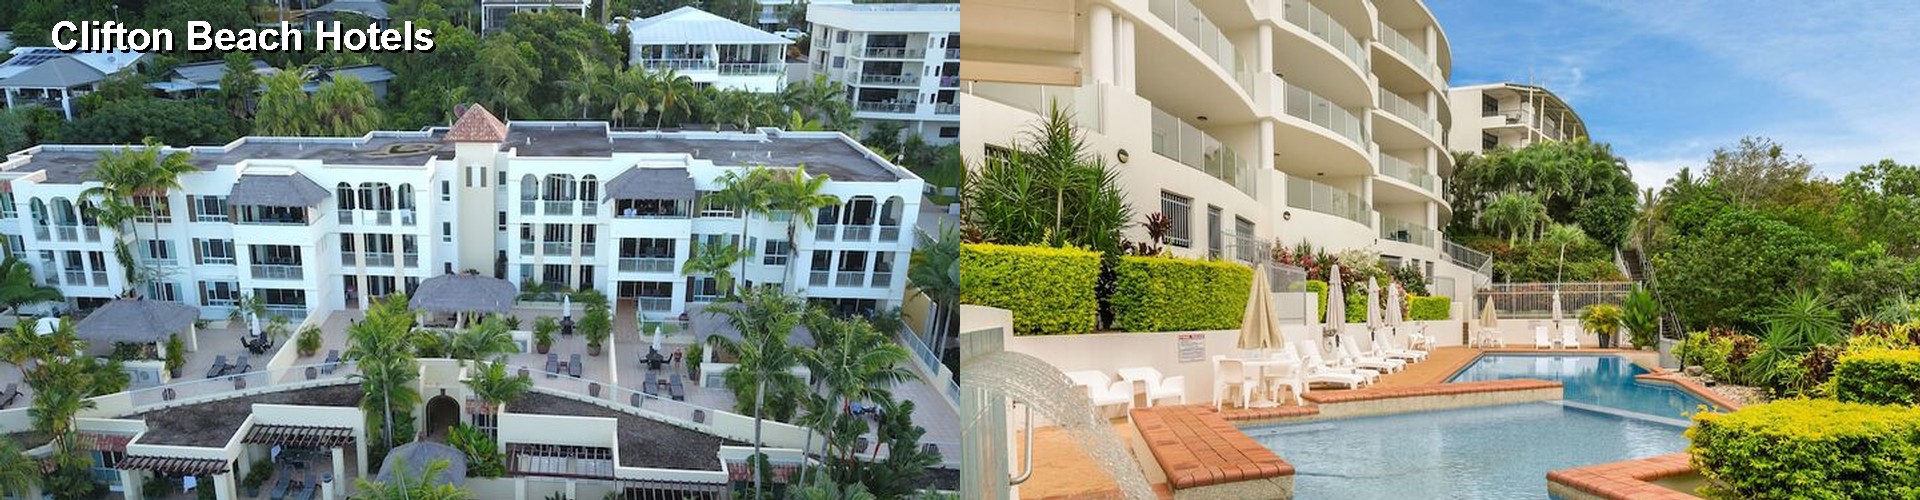 5 Best Hotels near Clifton Beach